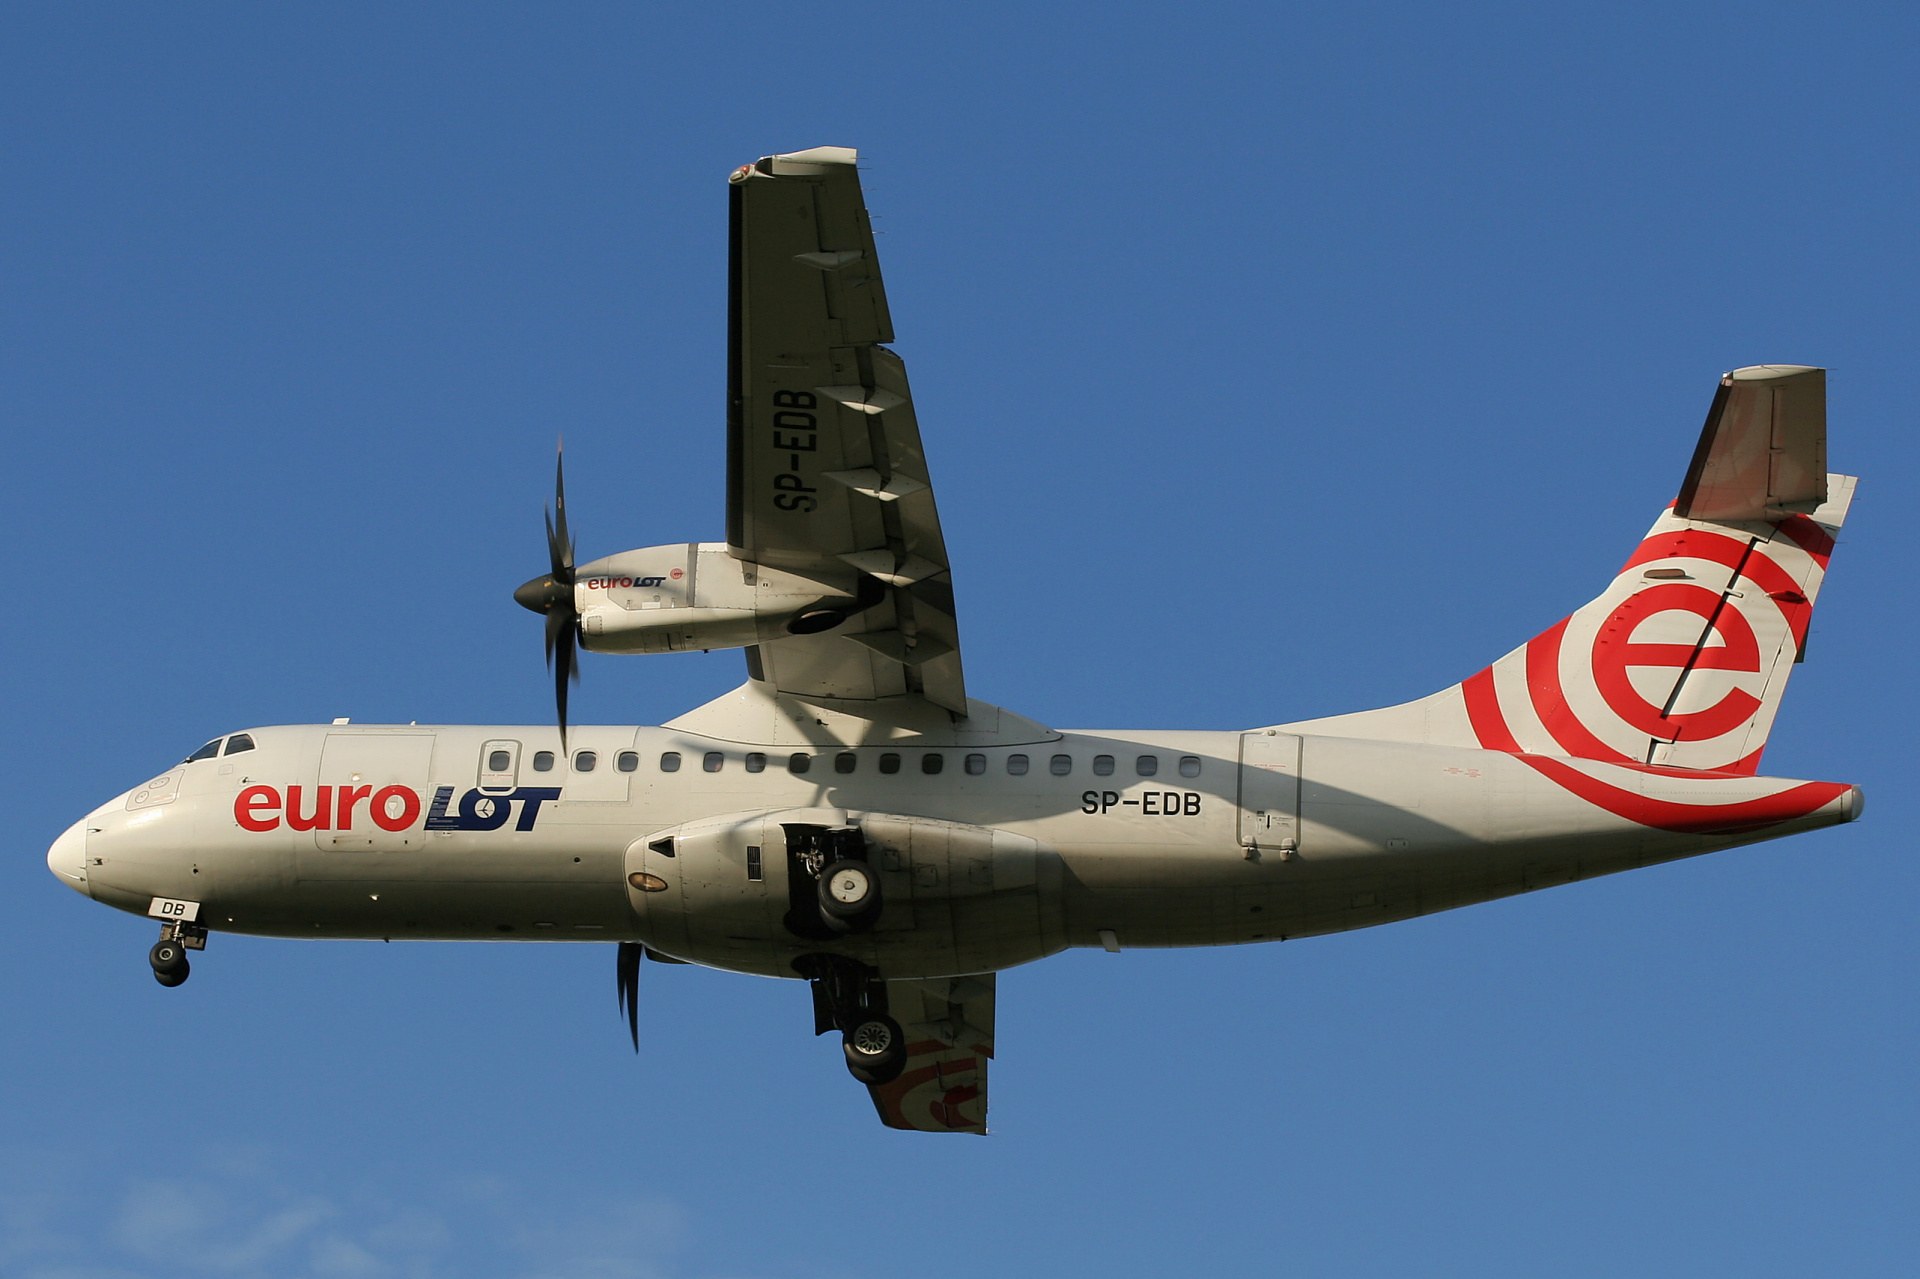 SP-EDB (Aircraft » EPWA Spotting » ATR 42 » EuroLOT)